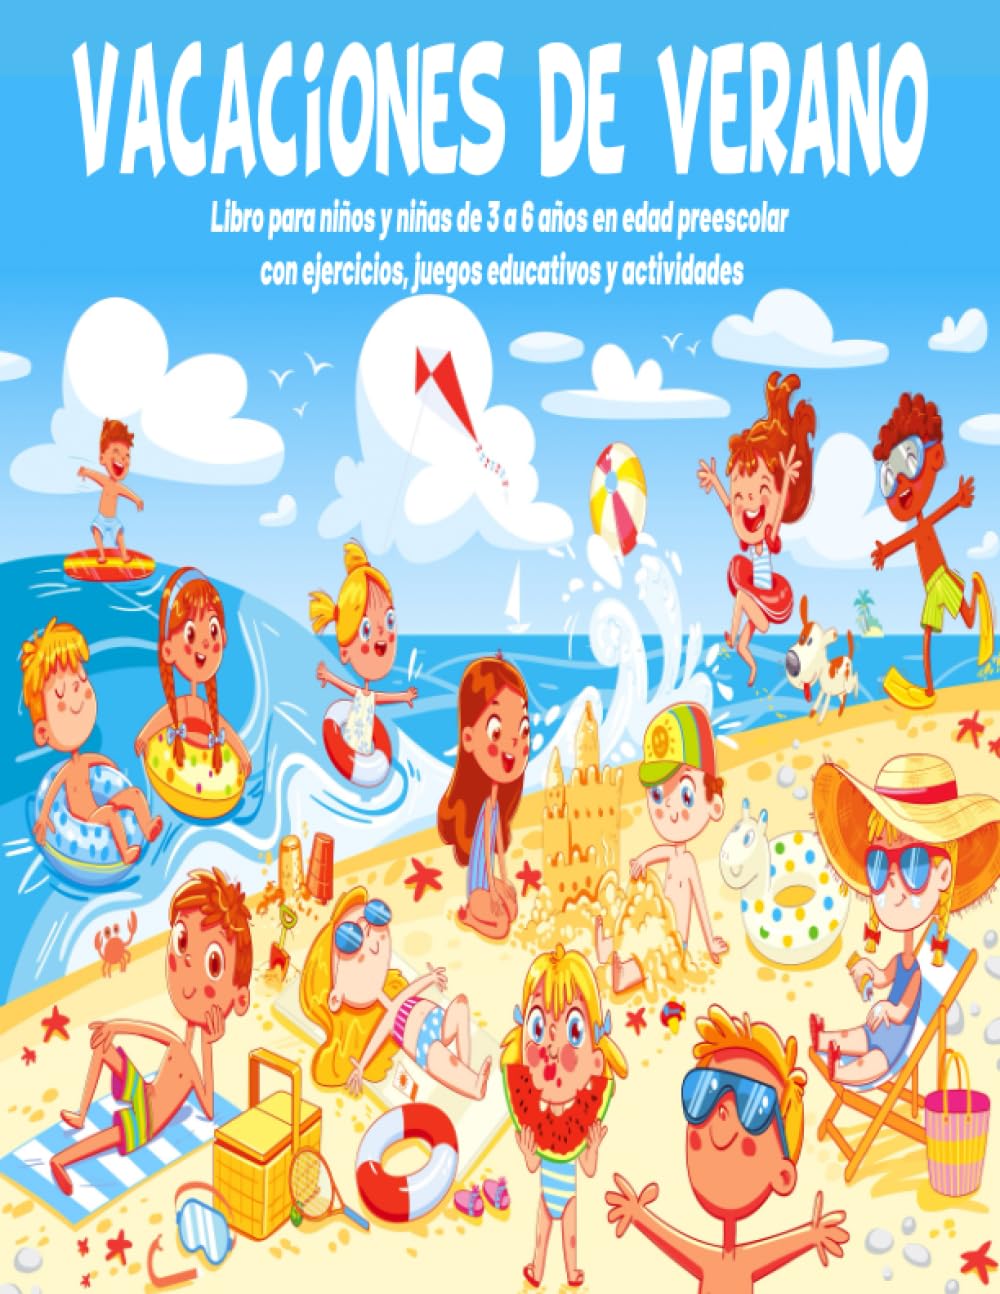 Libro: Vacaciones de verano - Libro para niños y niñas de 3 a 6 años en edad preescolar con ejercicios, juegos educativos y actividades por Alber Doncos